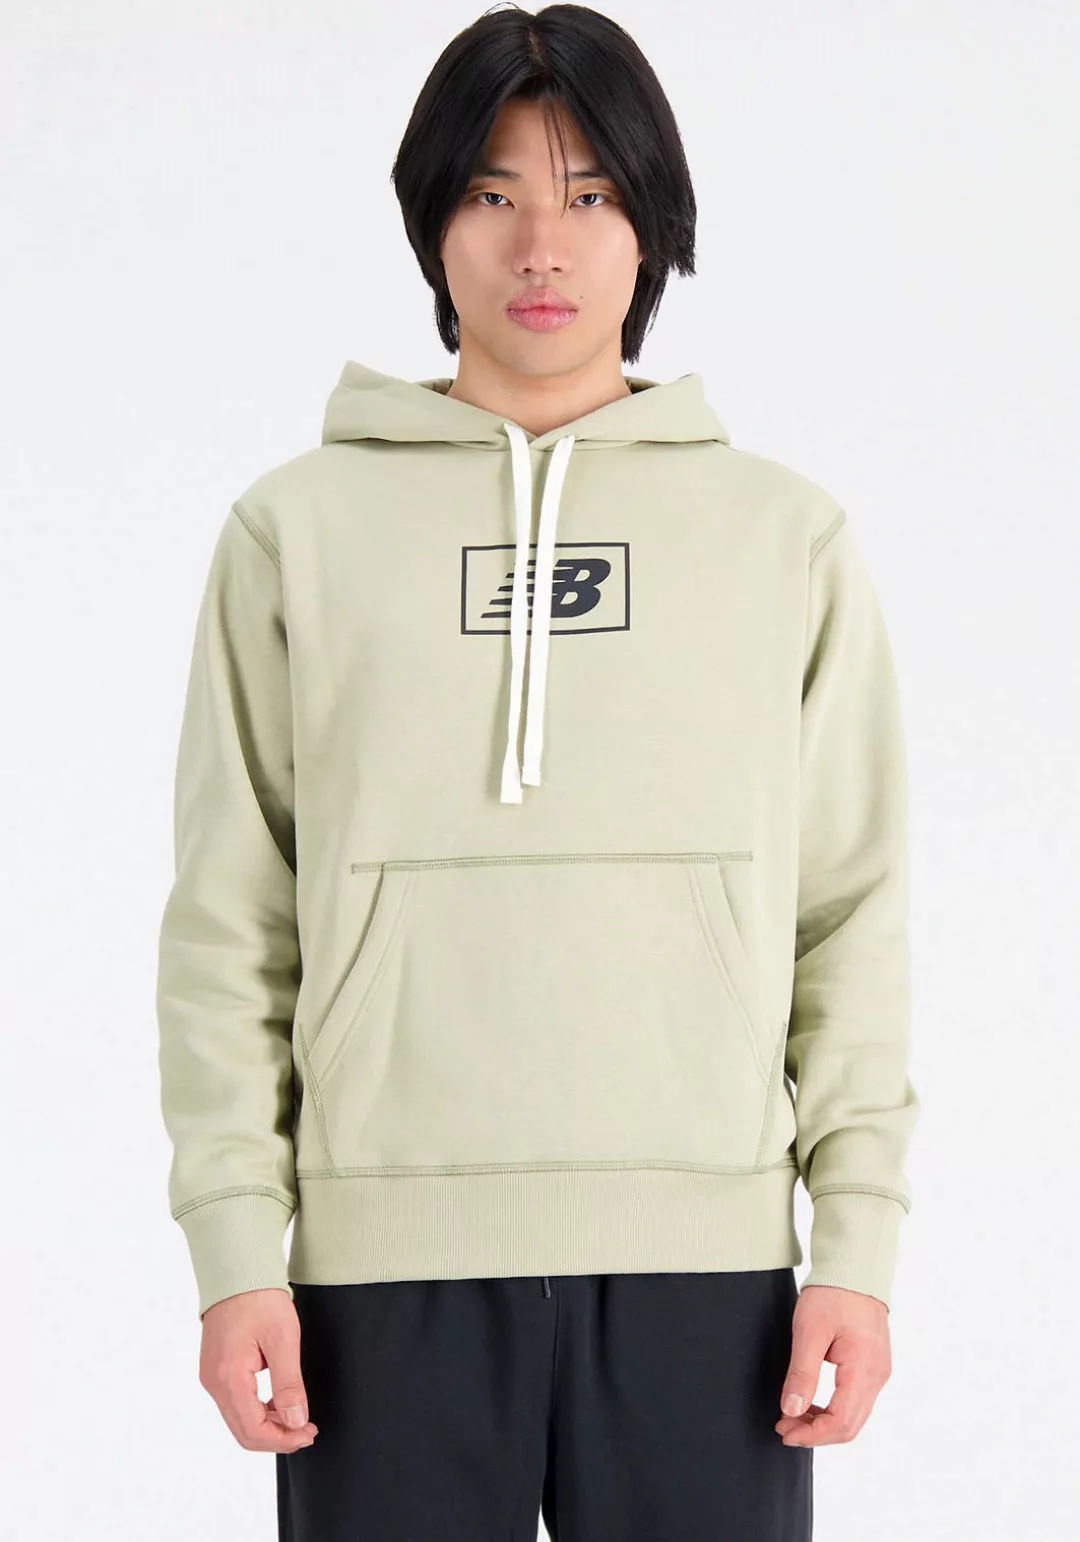 New Balance Sweatshirt günstig online kaufen